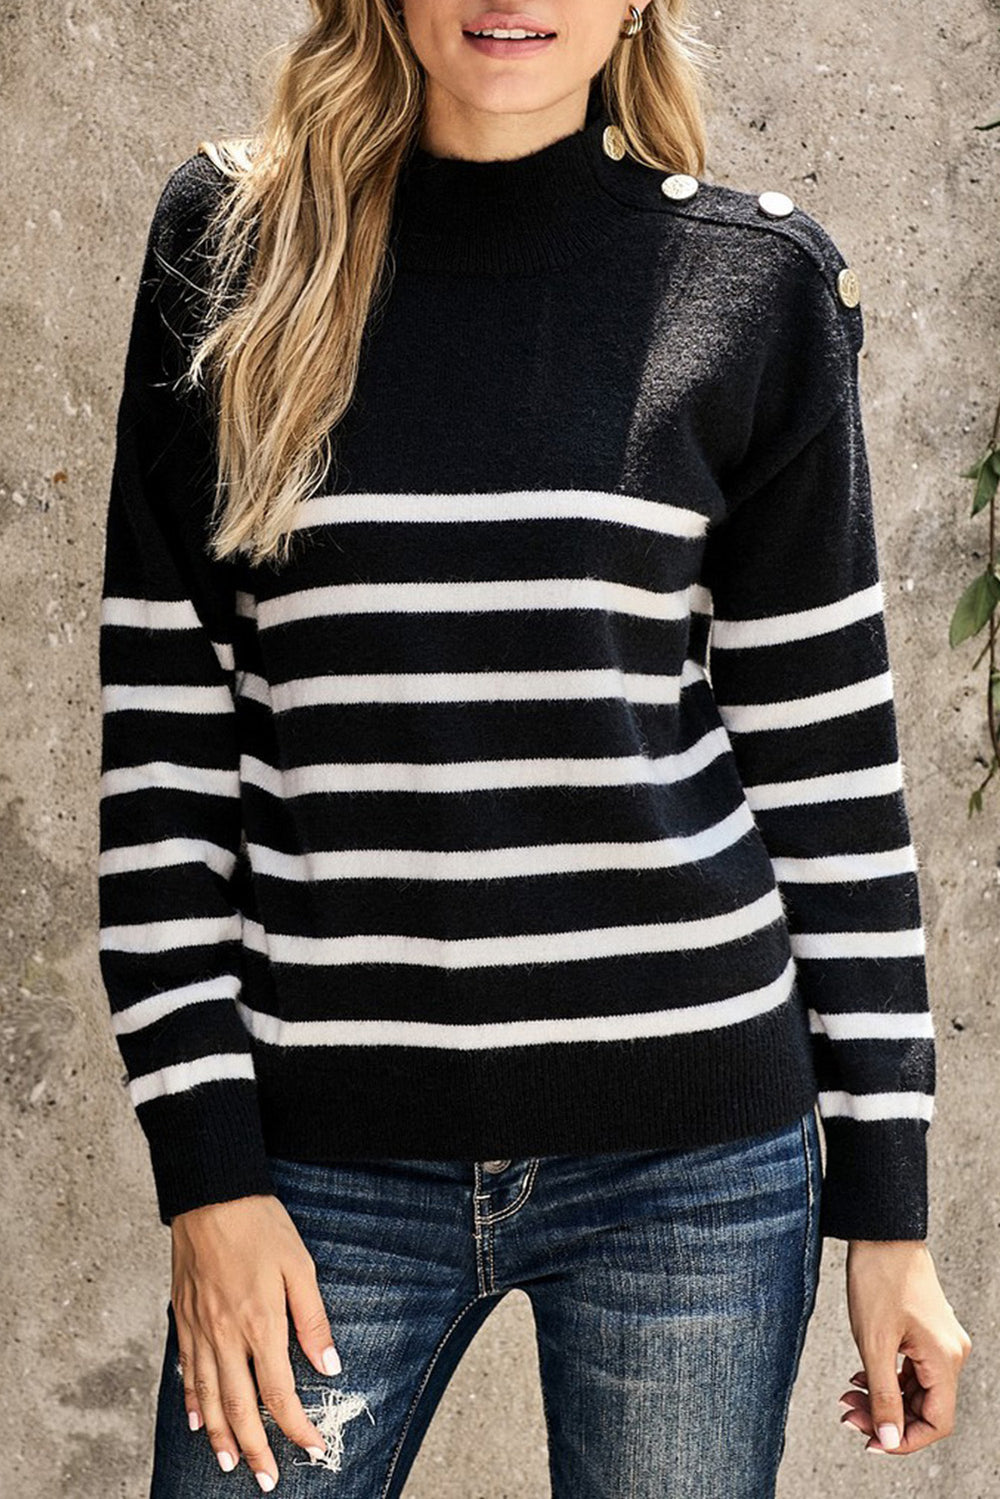 Winter Black Striped Turtleneck Long Sleeve Sweater